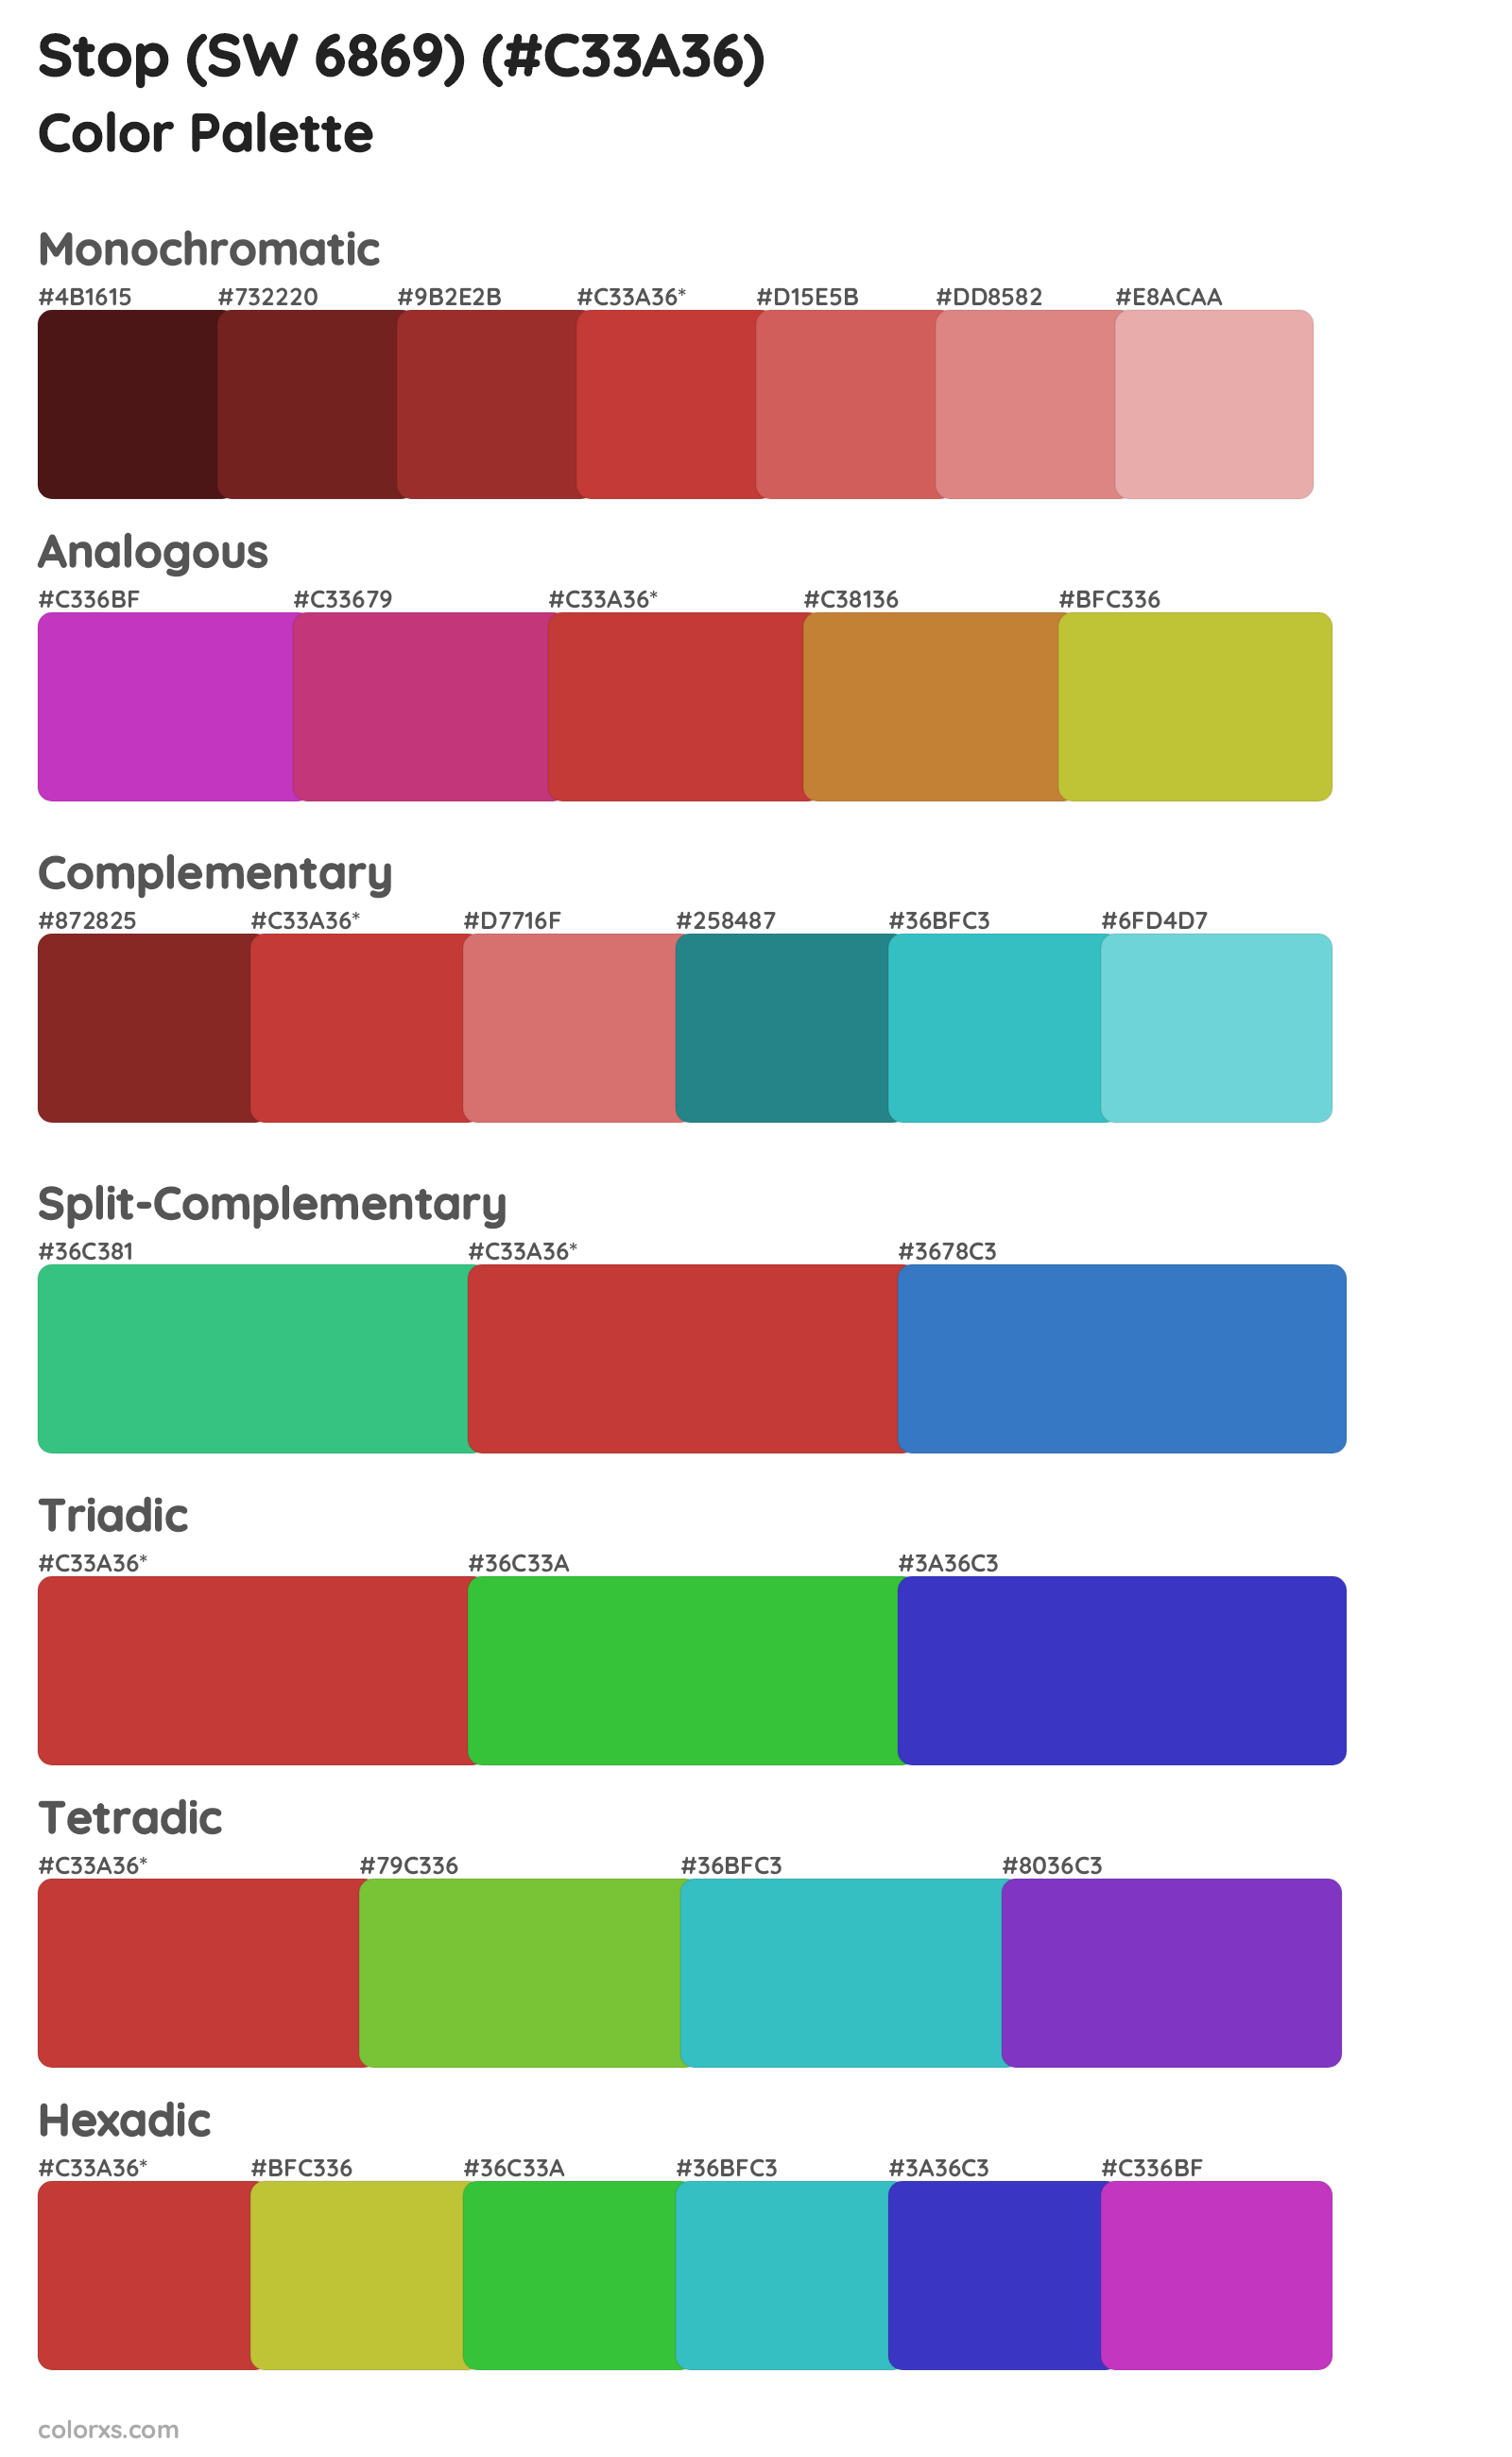 Stop (SW 6869) Color Scheme Palettes